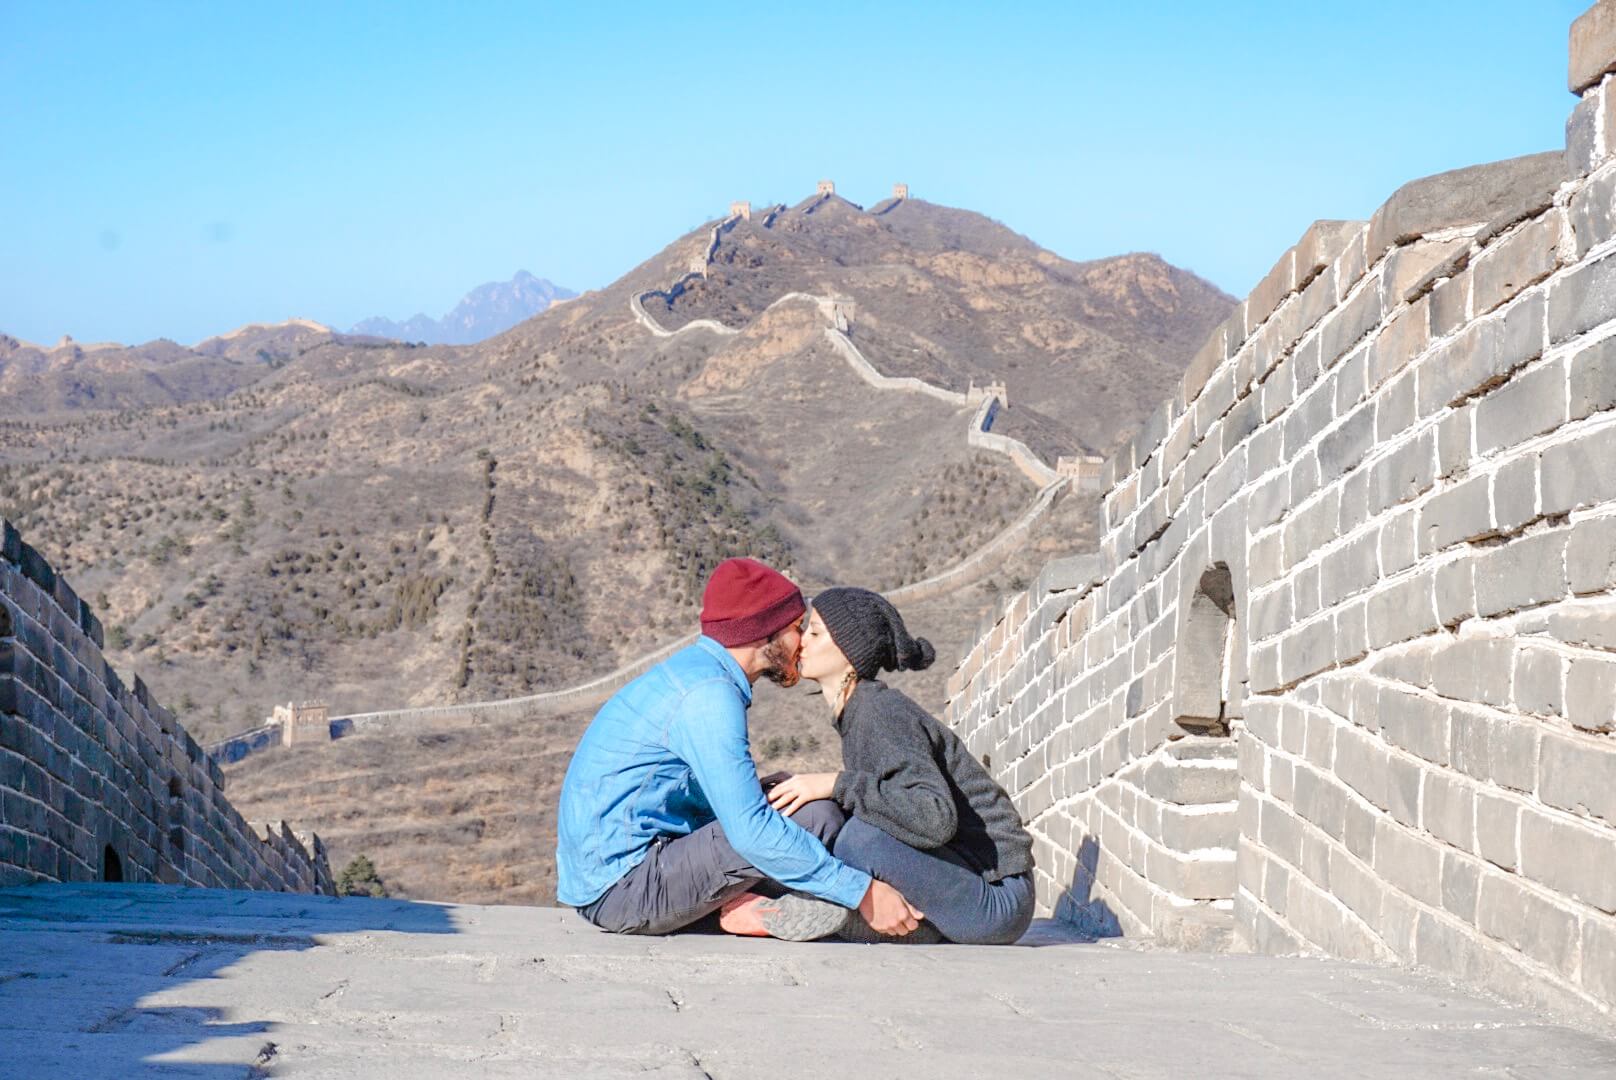 visiter la muraille de chine seul sans touriste